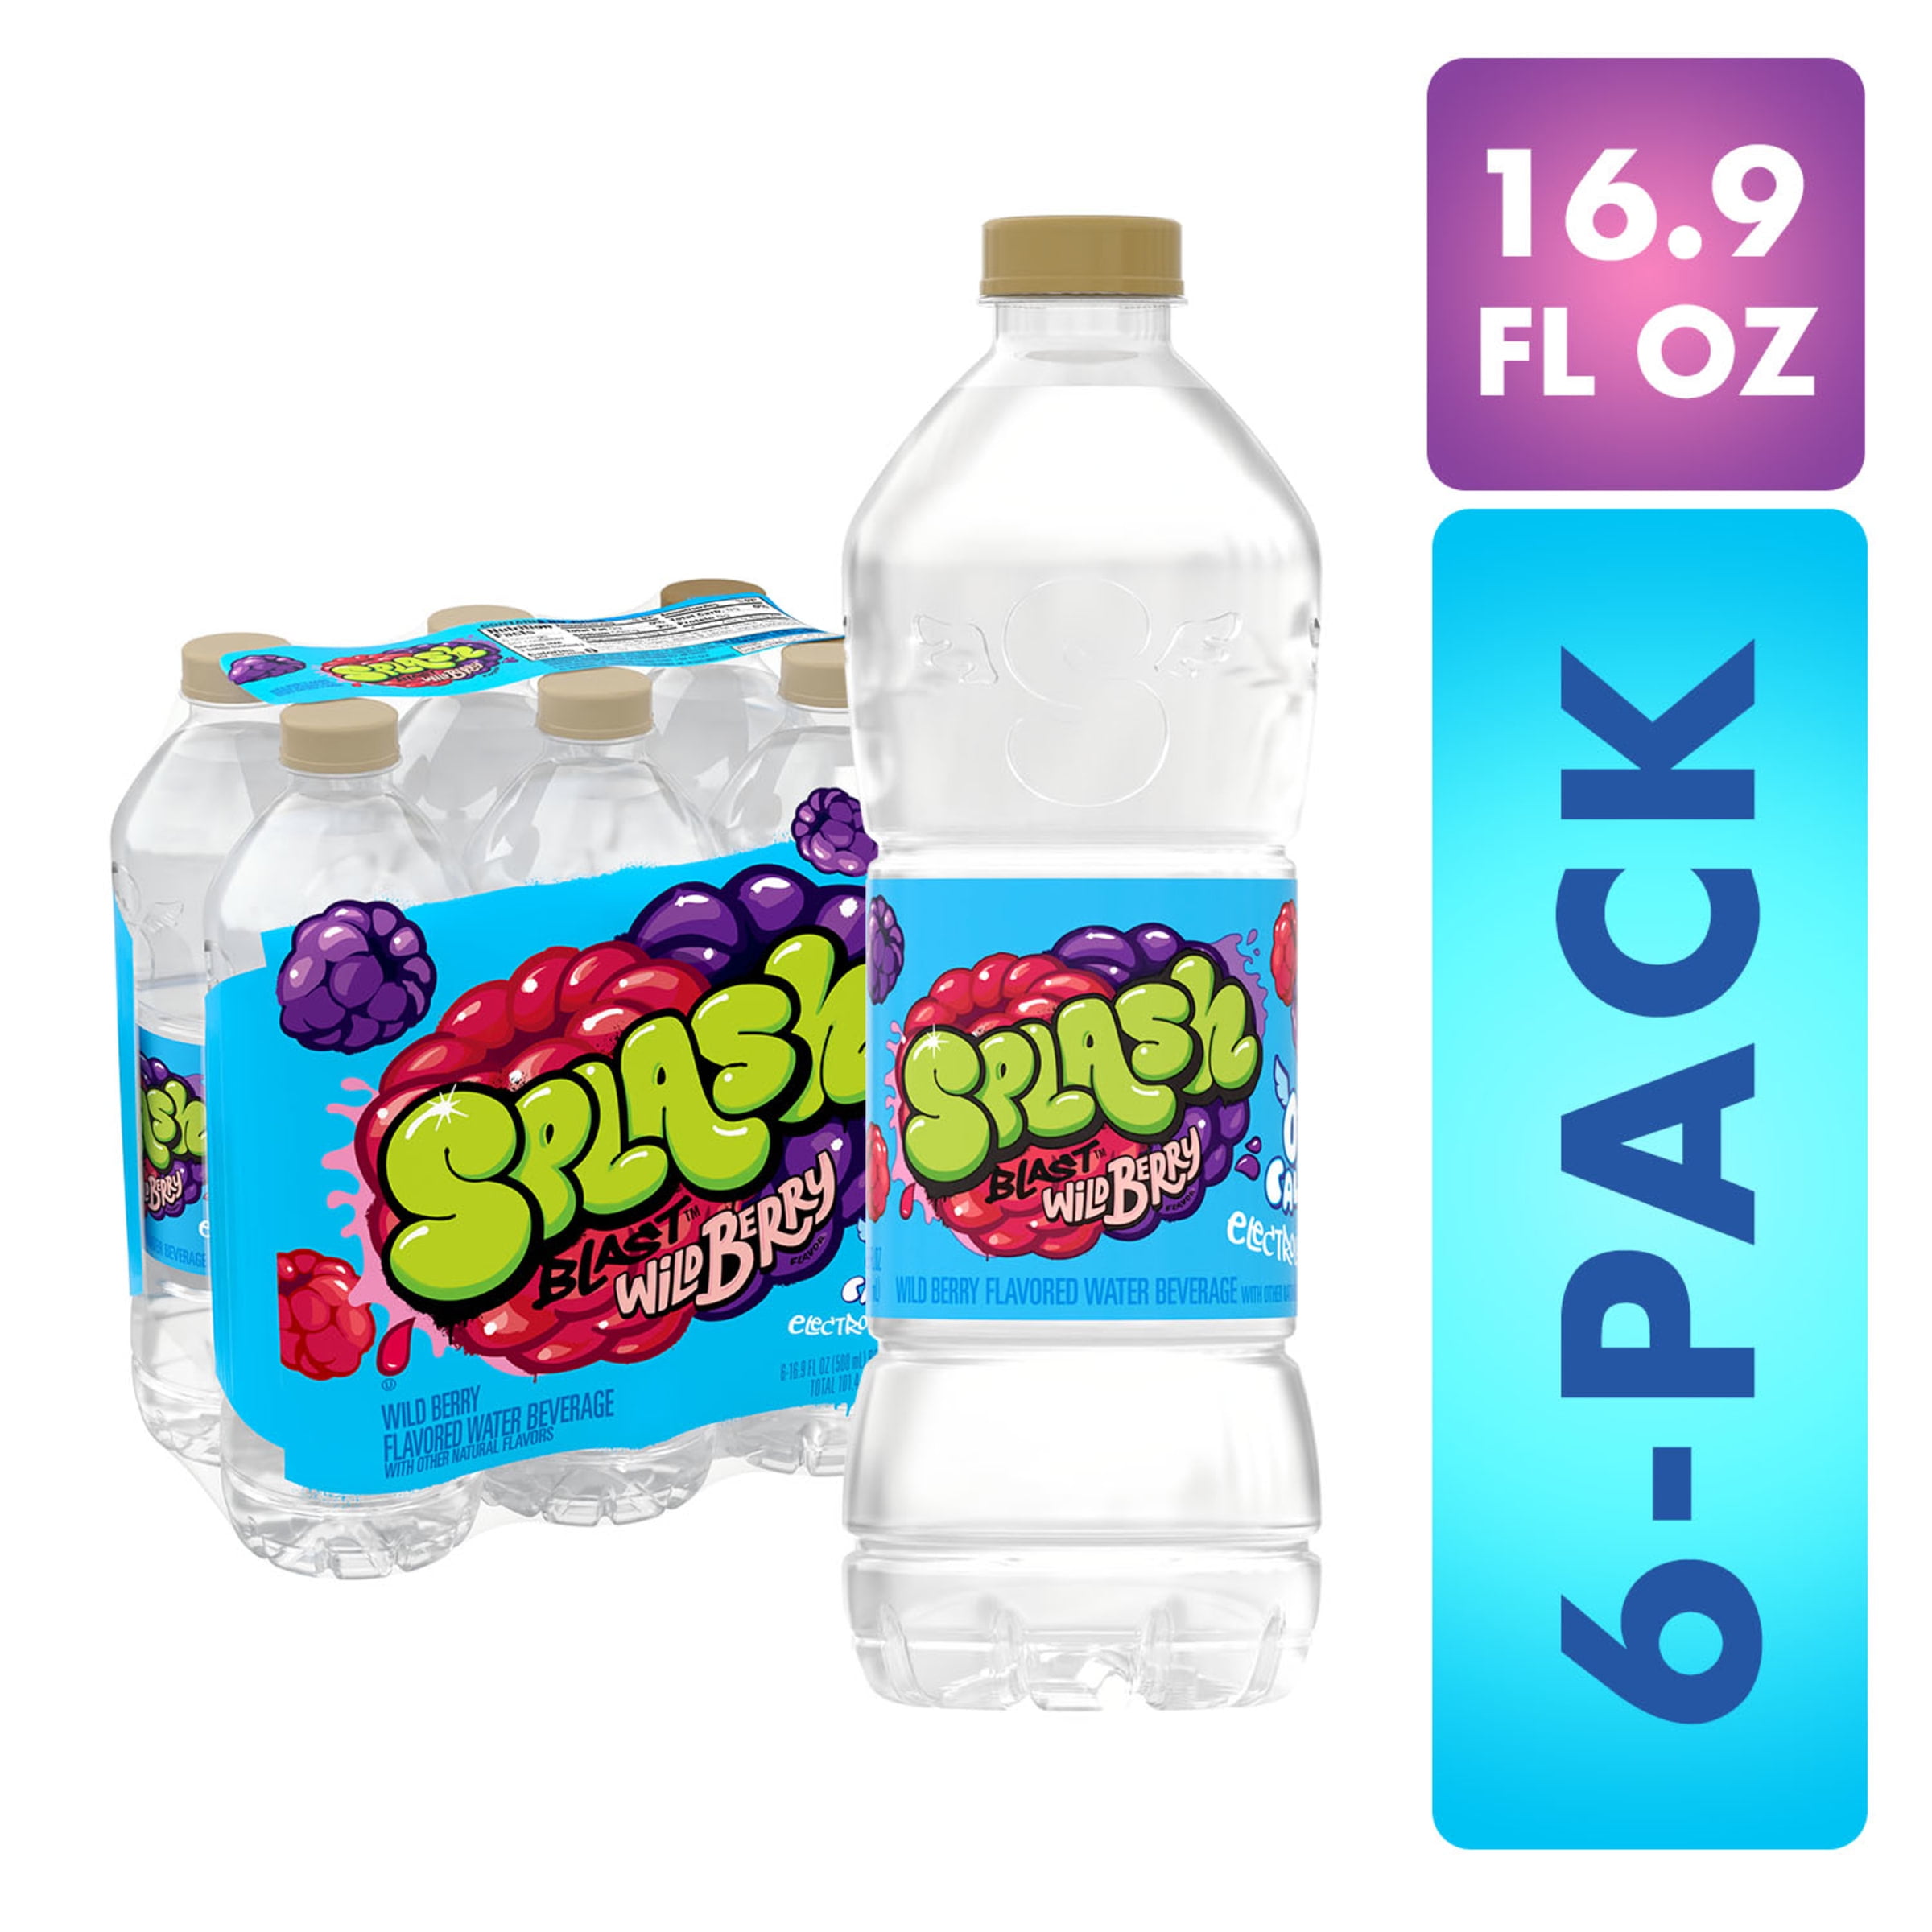 Splash Blast Water Beverage, Wild Berry Flavor